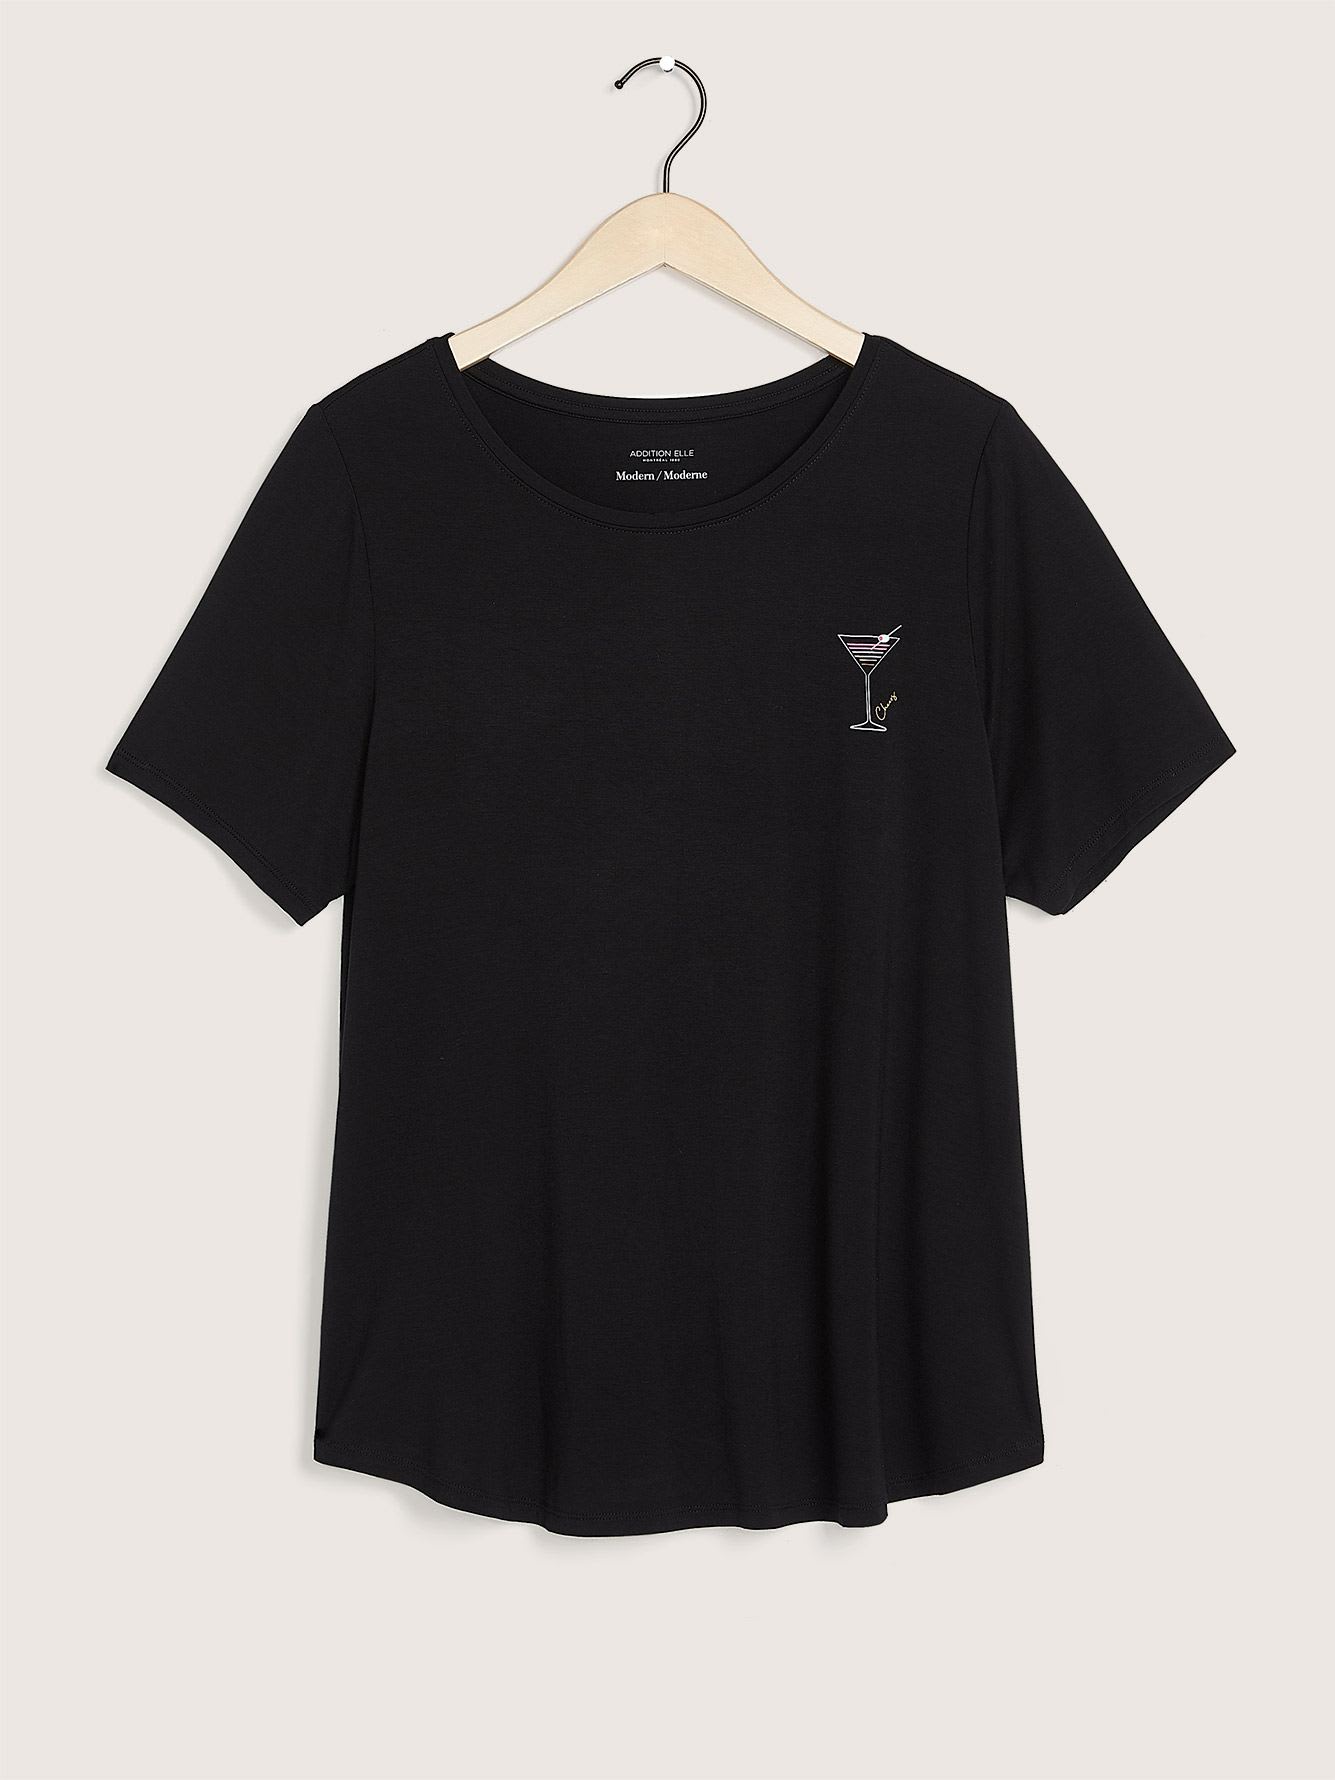 T-shirt uni coupe moderne imprimé, tissu responsable - Addition Elle